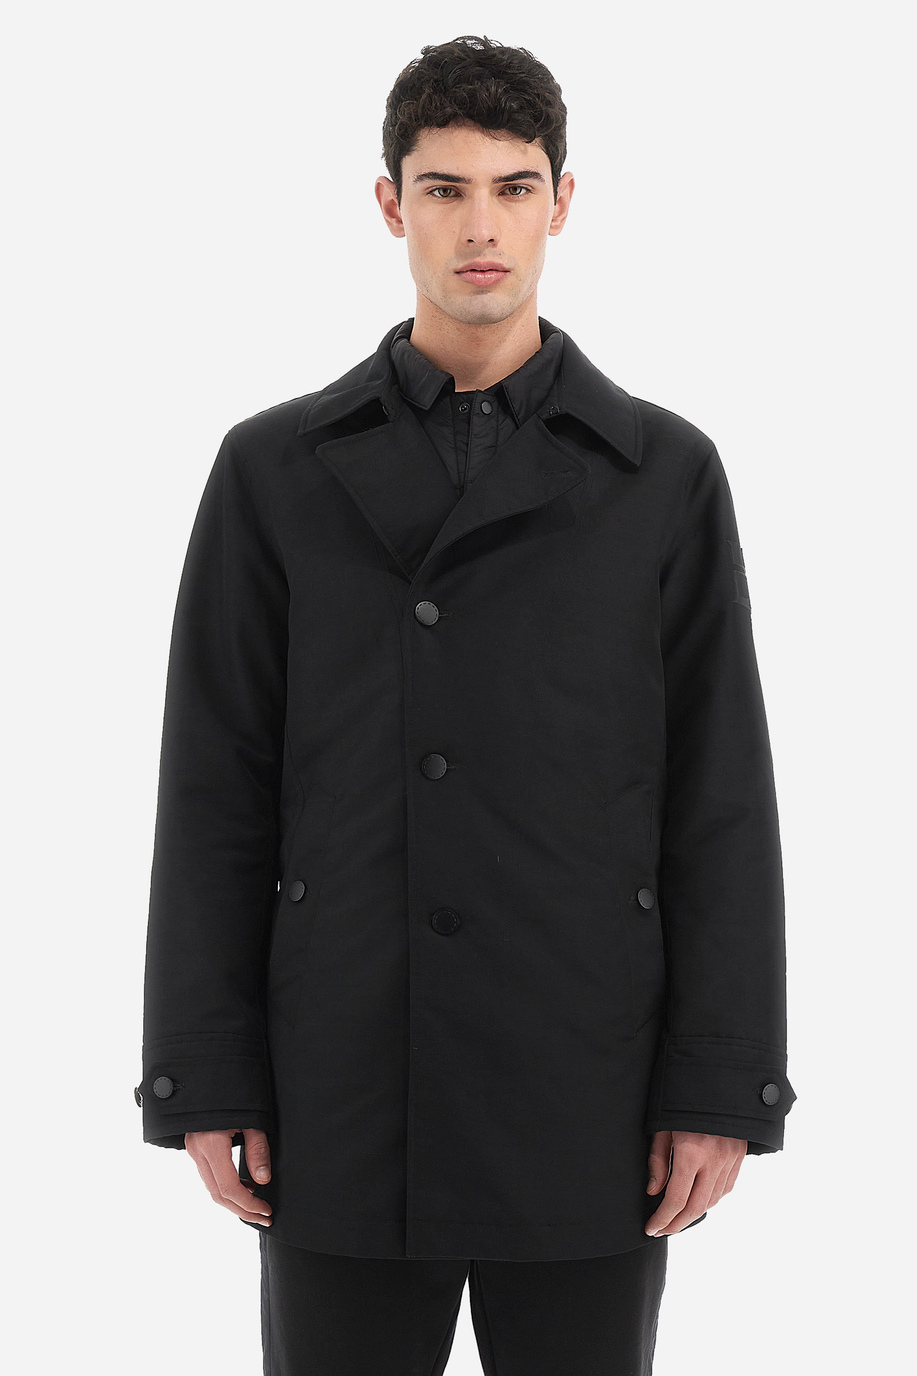 Man jacket in regular fit - Welborn - Gerard Loft X La Martina | La Martina - Official Online Shop